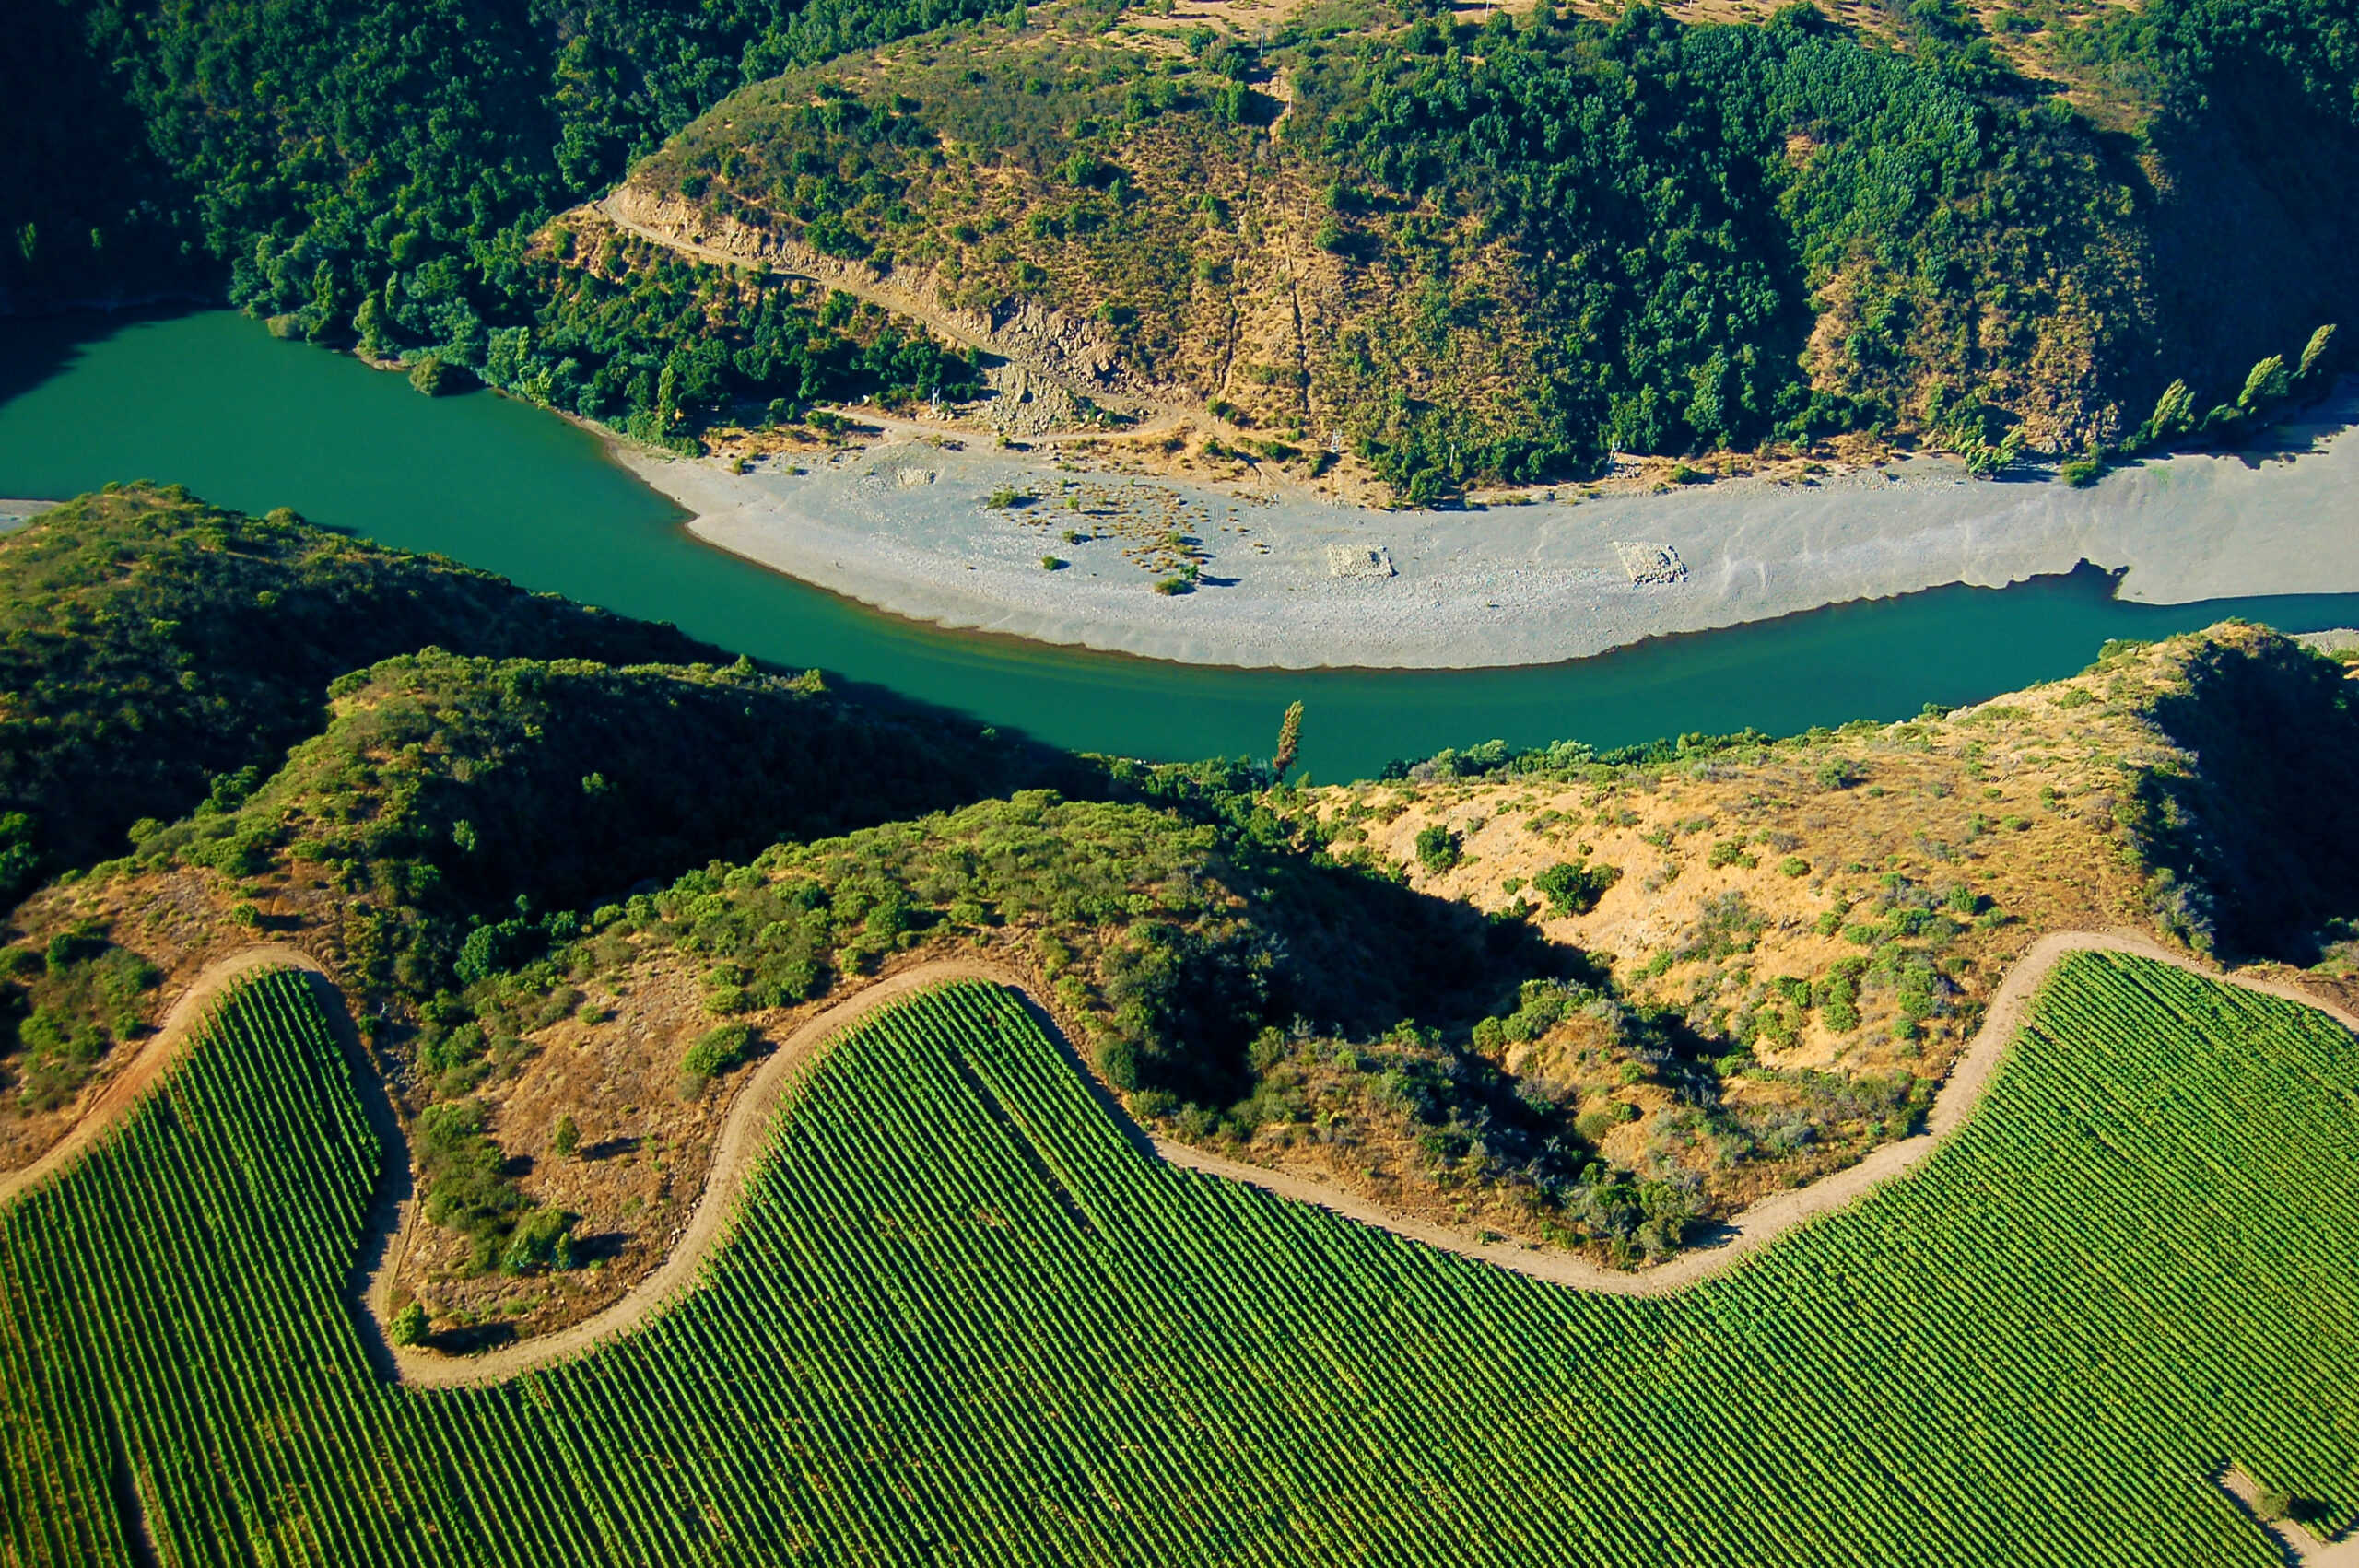 Localizado às margens do rio Rapel, o vinhedo Ucúquer conta com condições privilegiadas para produção de vinhos brancos e tintos frescos